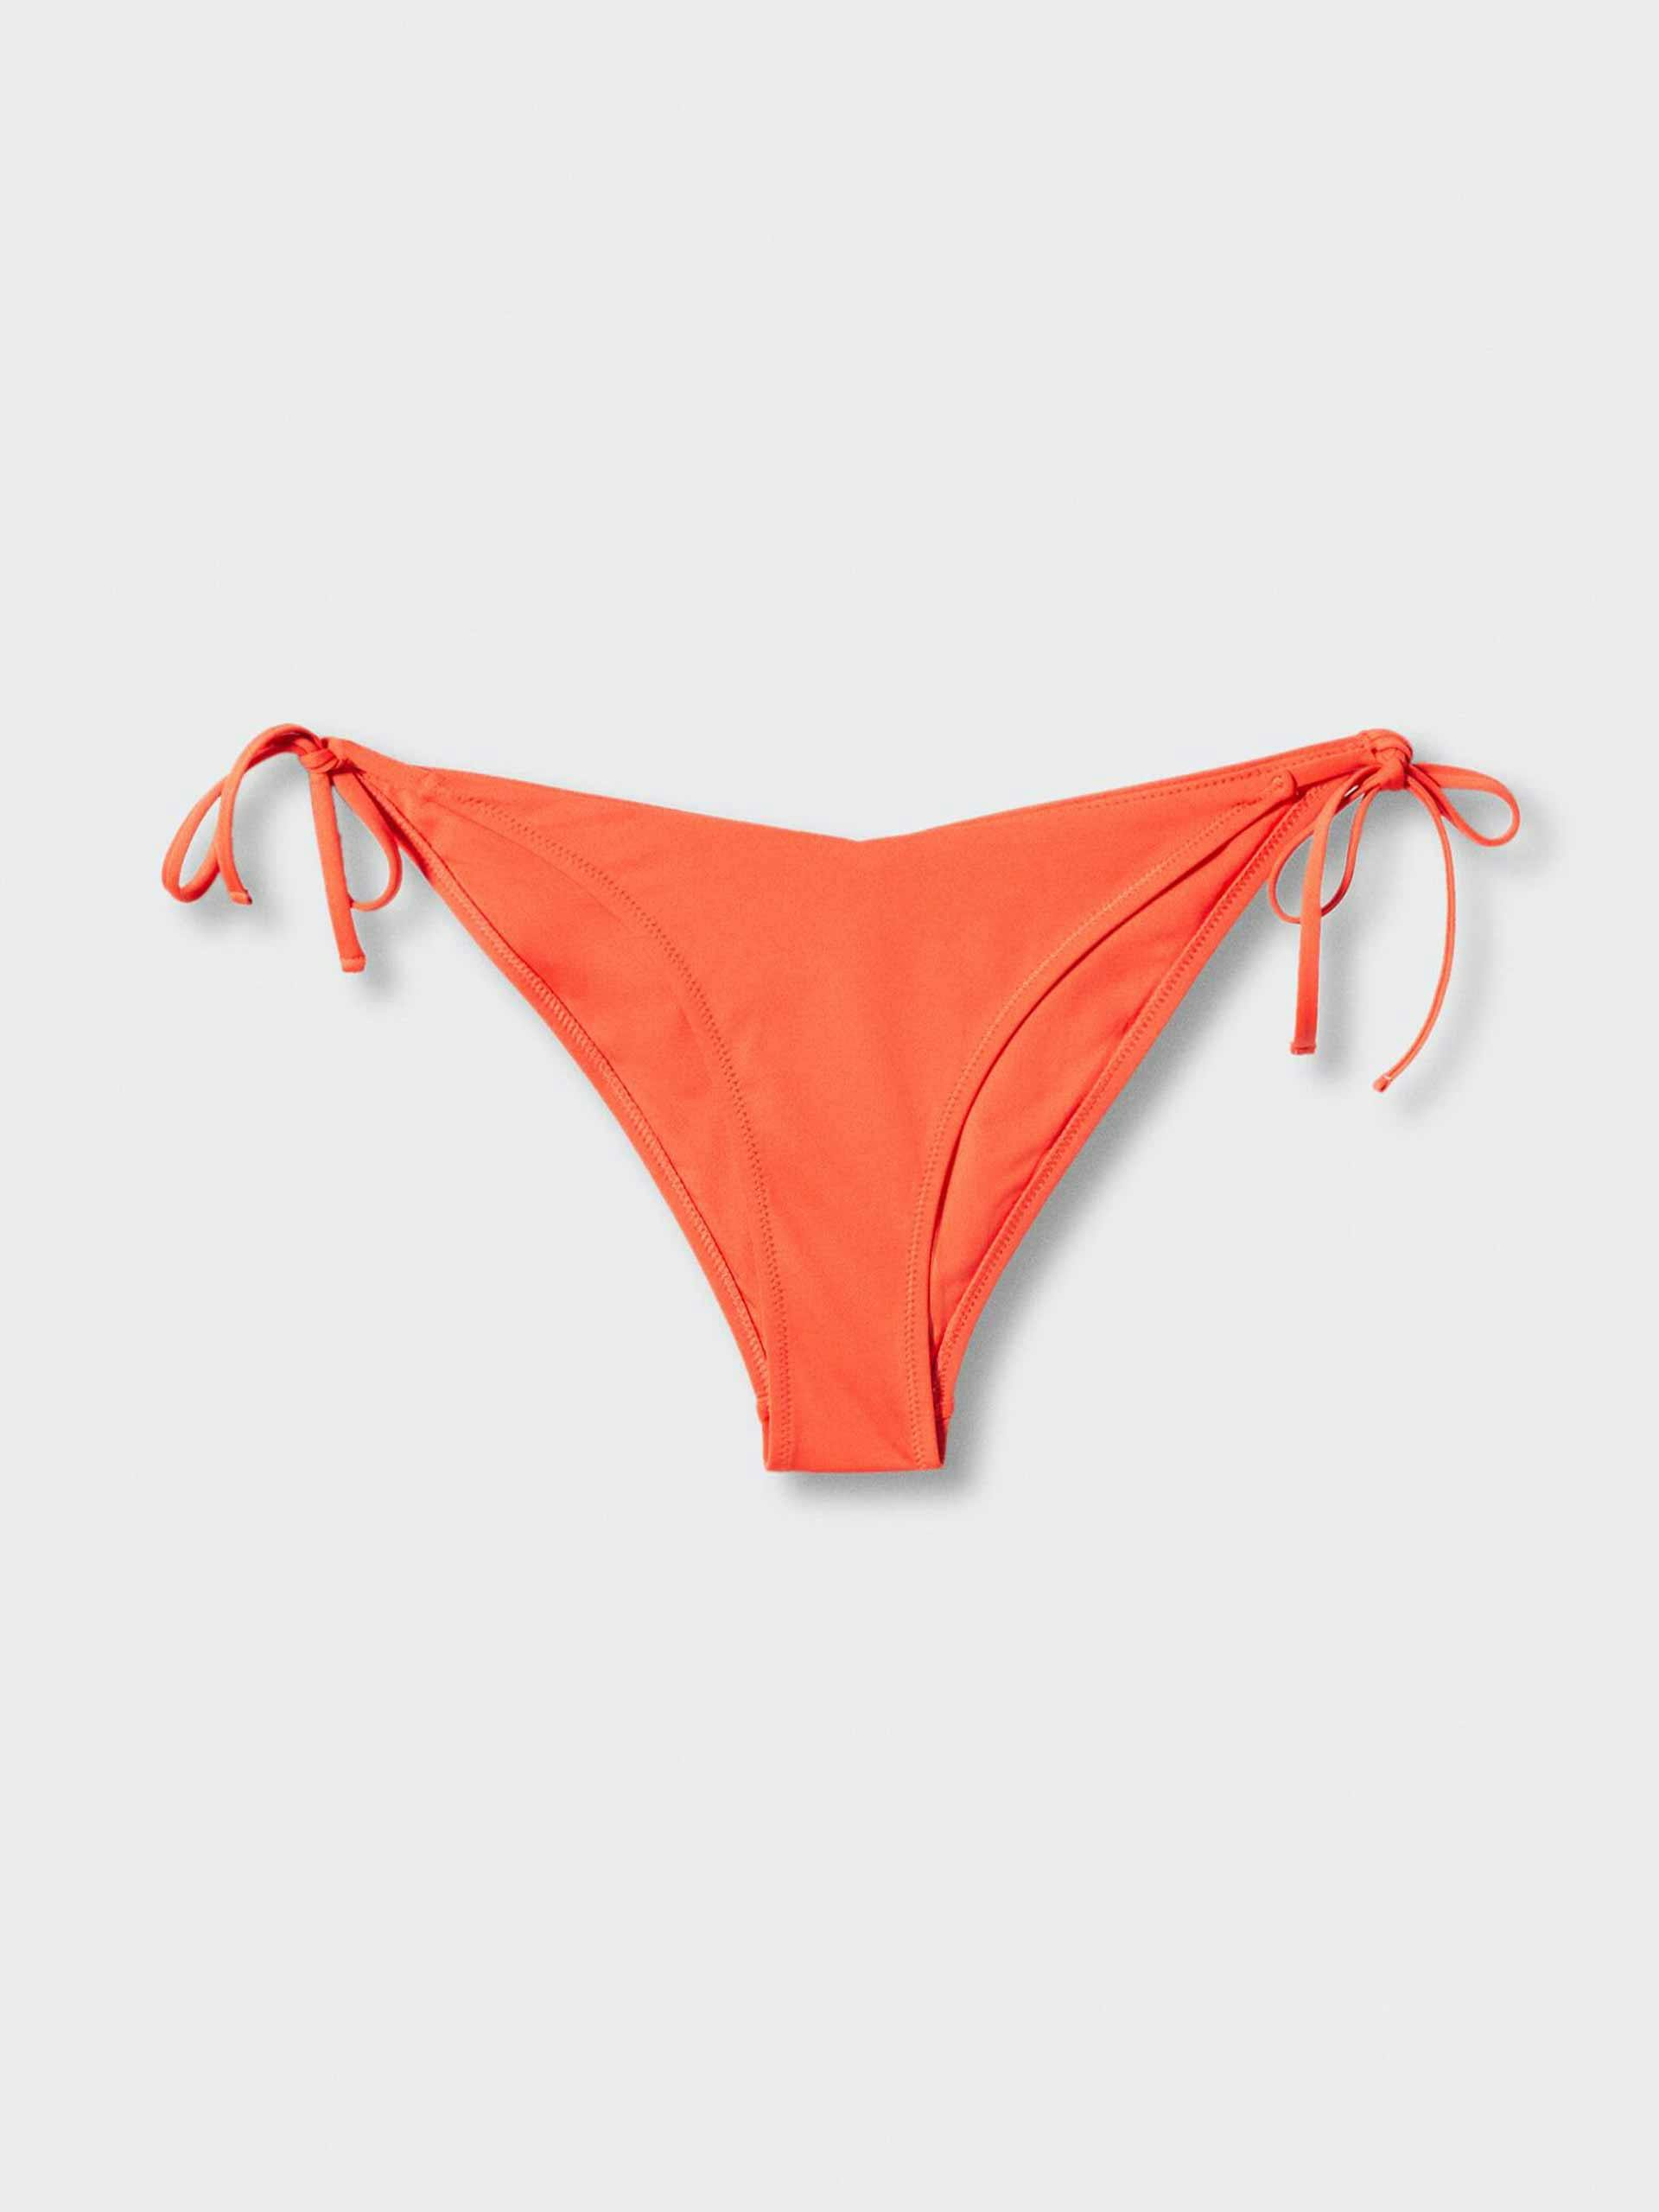 Orange tie bikini bottoms